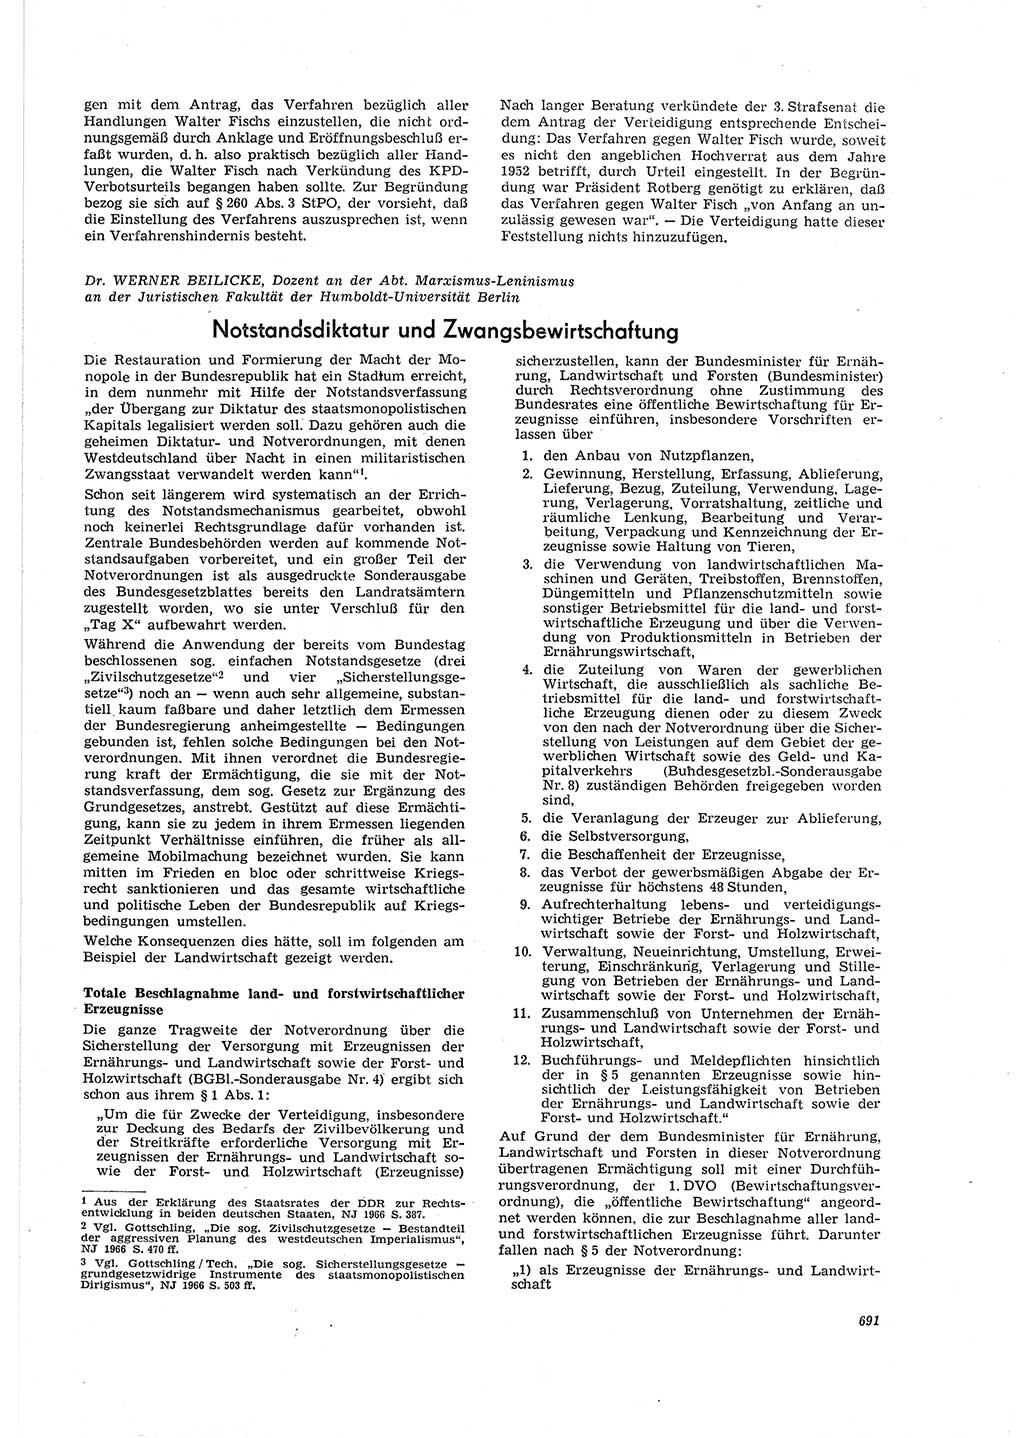 Neue Justiz (NJ), Zeitschrift für Recht und Rechtswissenschaft [Deutsche Demokratische Republik (DDR)], 20. Jahrgang 1966, Seite 691 (NJ DDR 1966, S. 691)